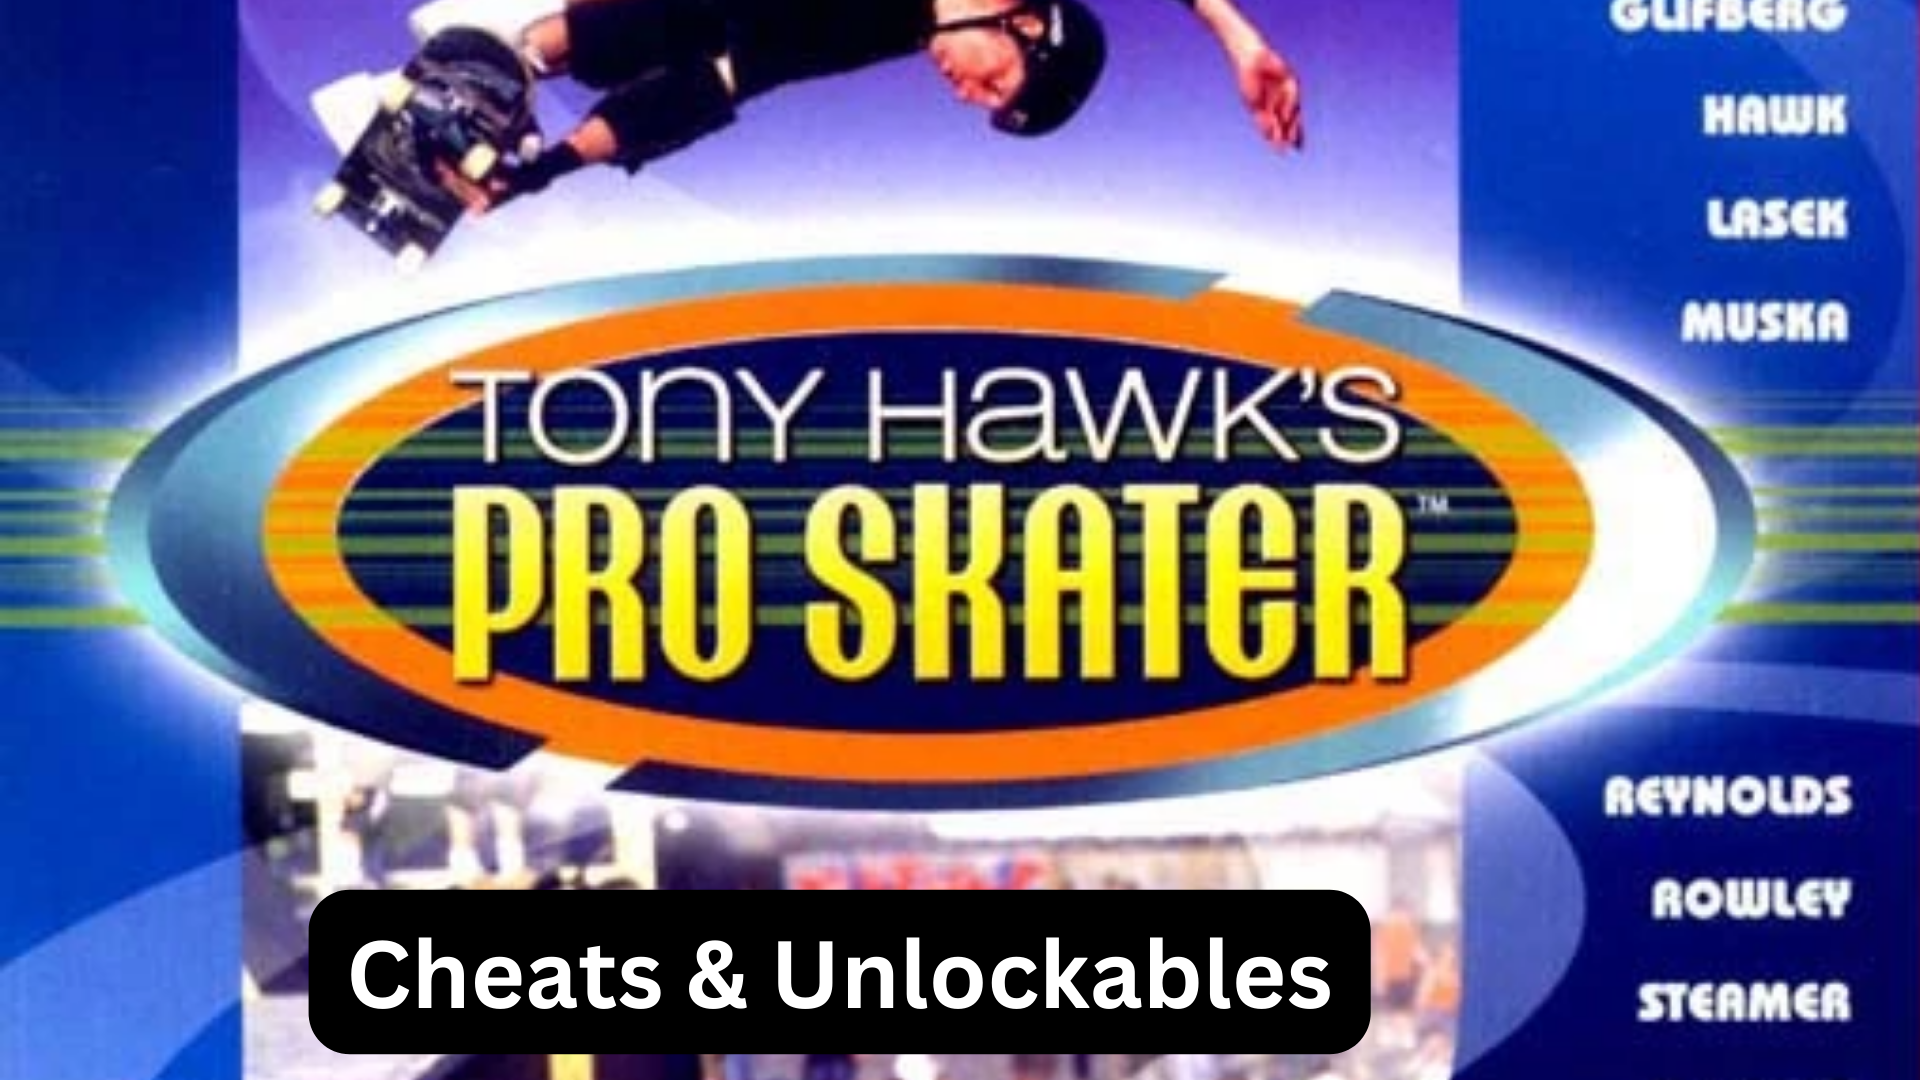 tony hawk's pro skater cheats